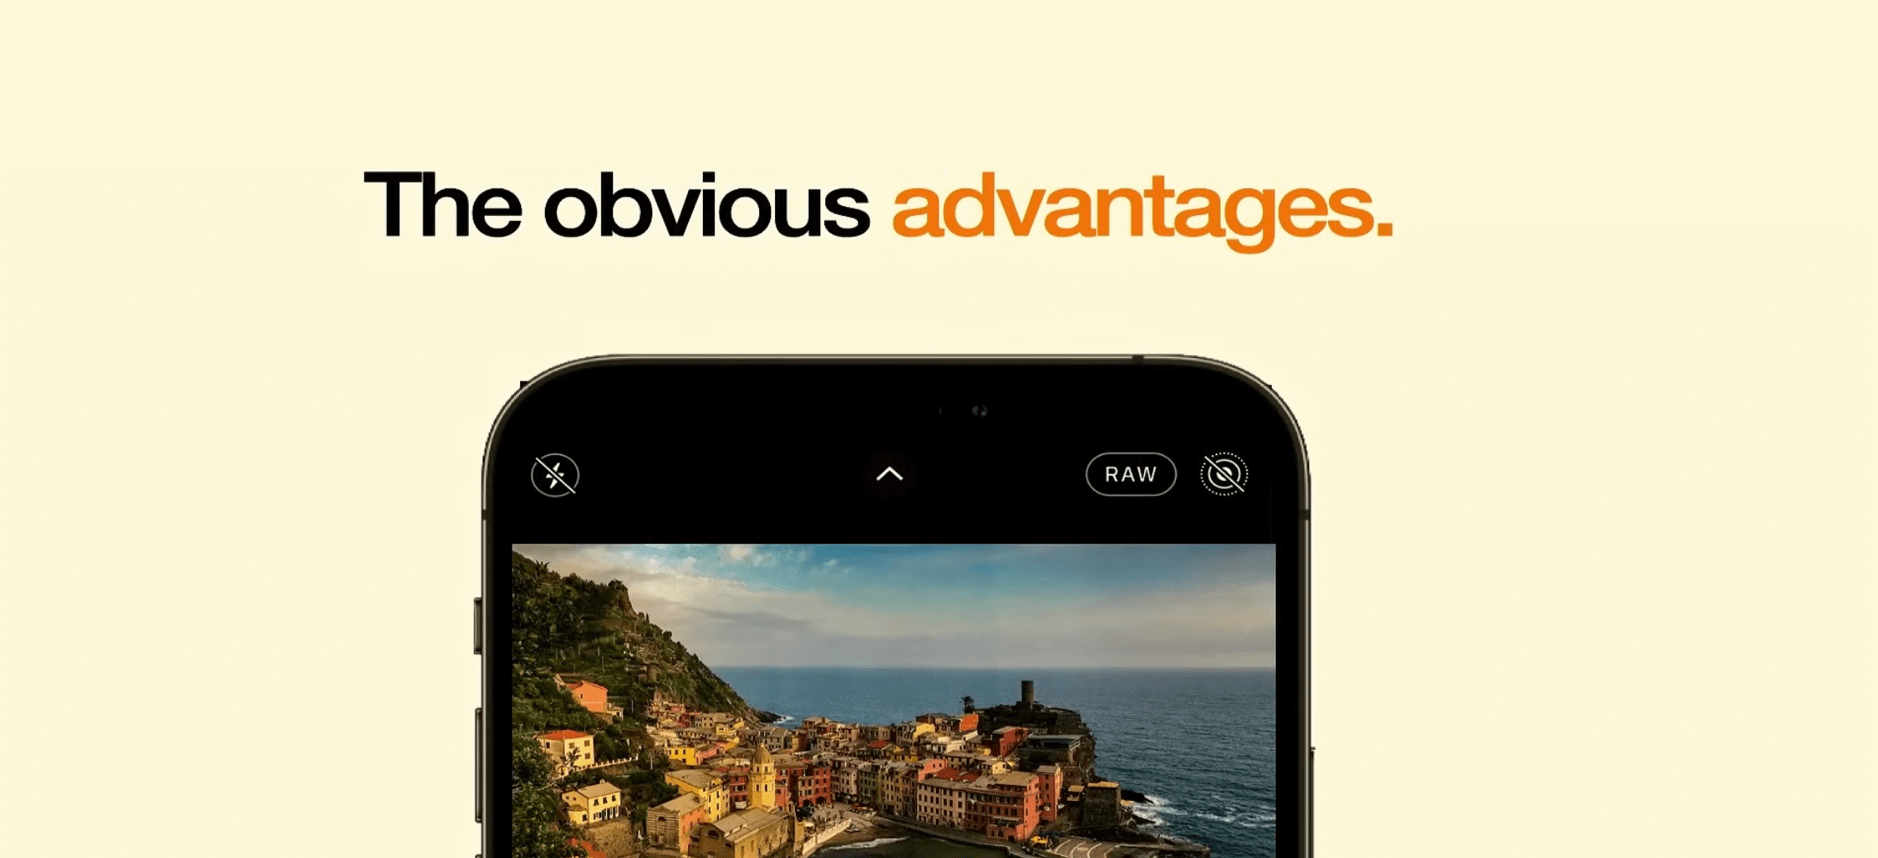 Das Bild zeigt ein Smartphone, das ein Foto von einer malerischen Küstenstadt anzeigt, mit dem Text "The obvious advantages." über dem Bildschirm.